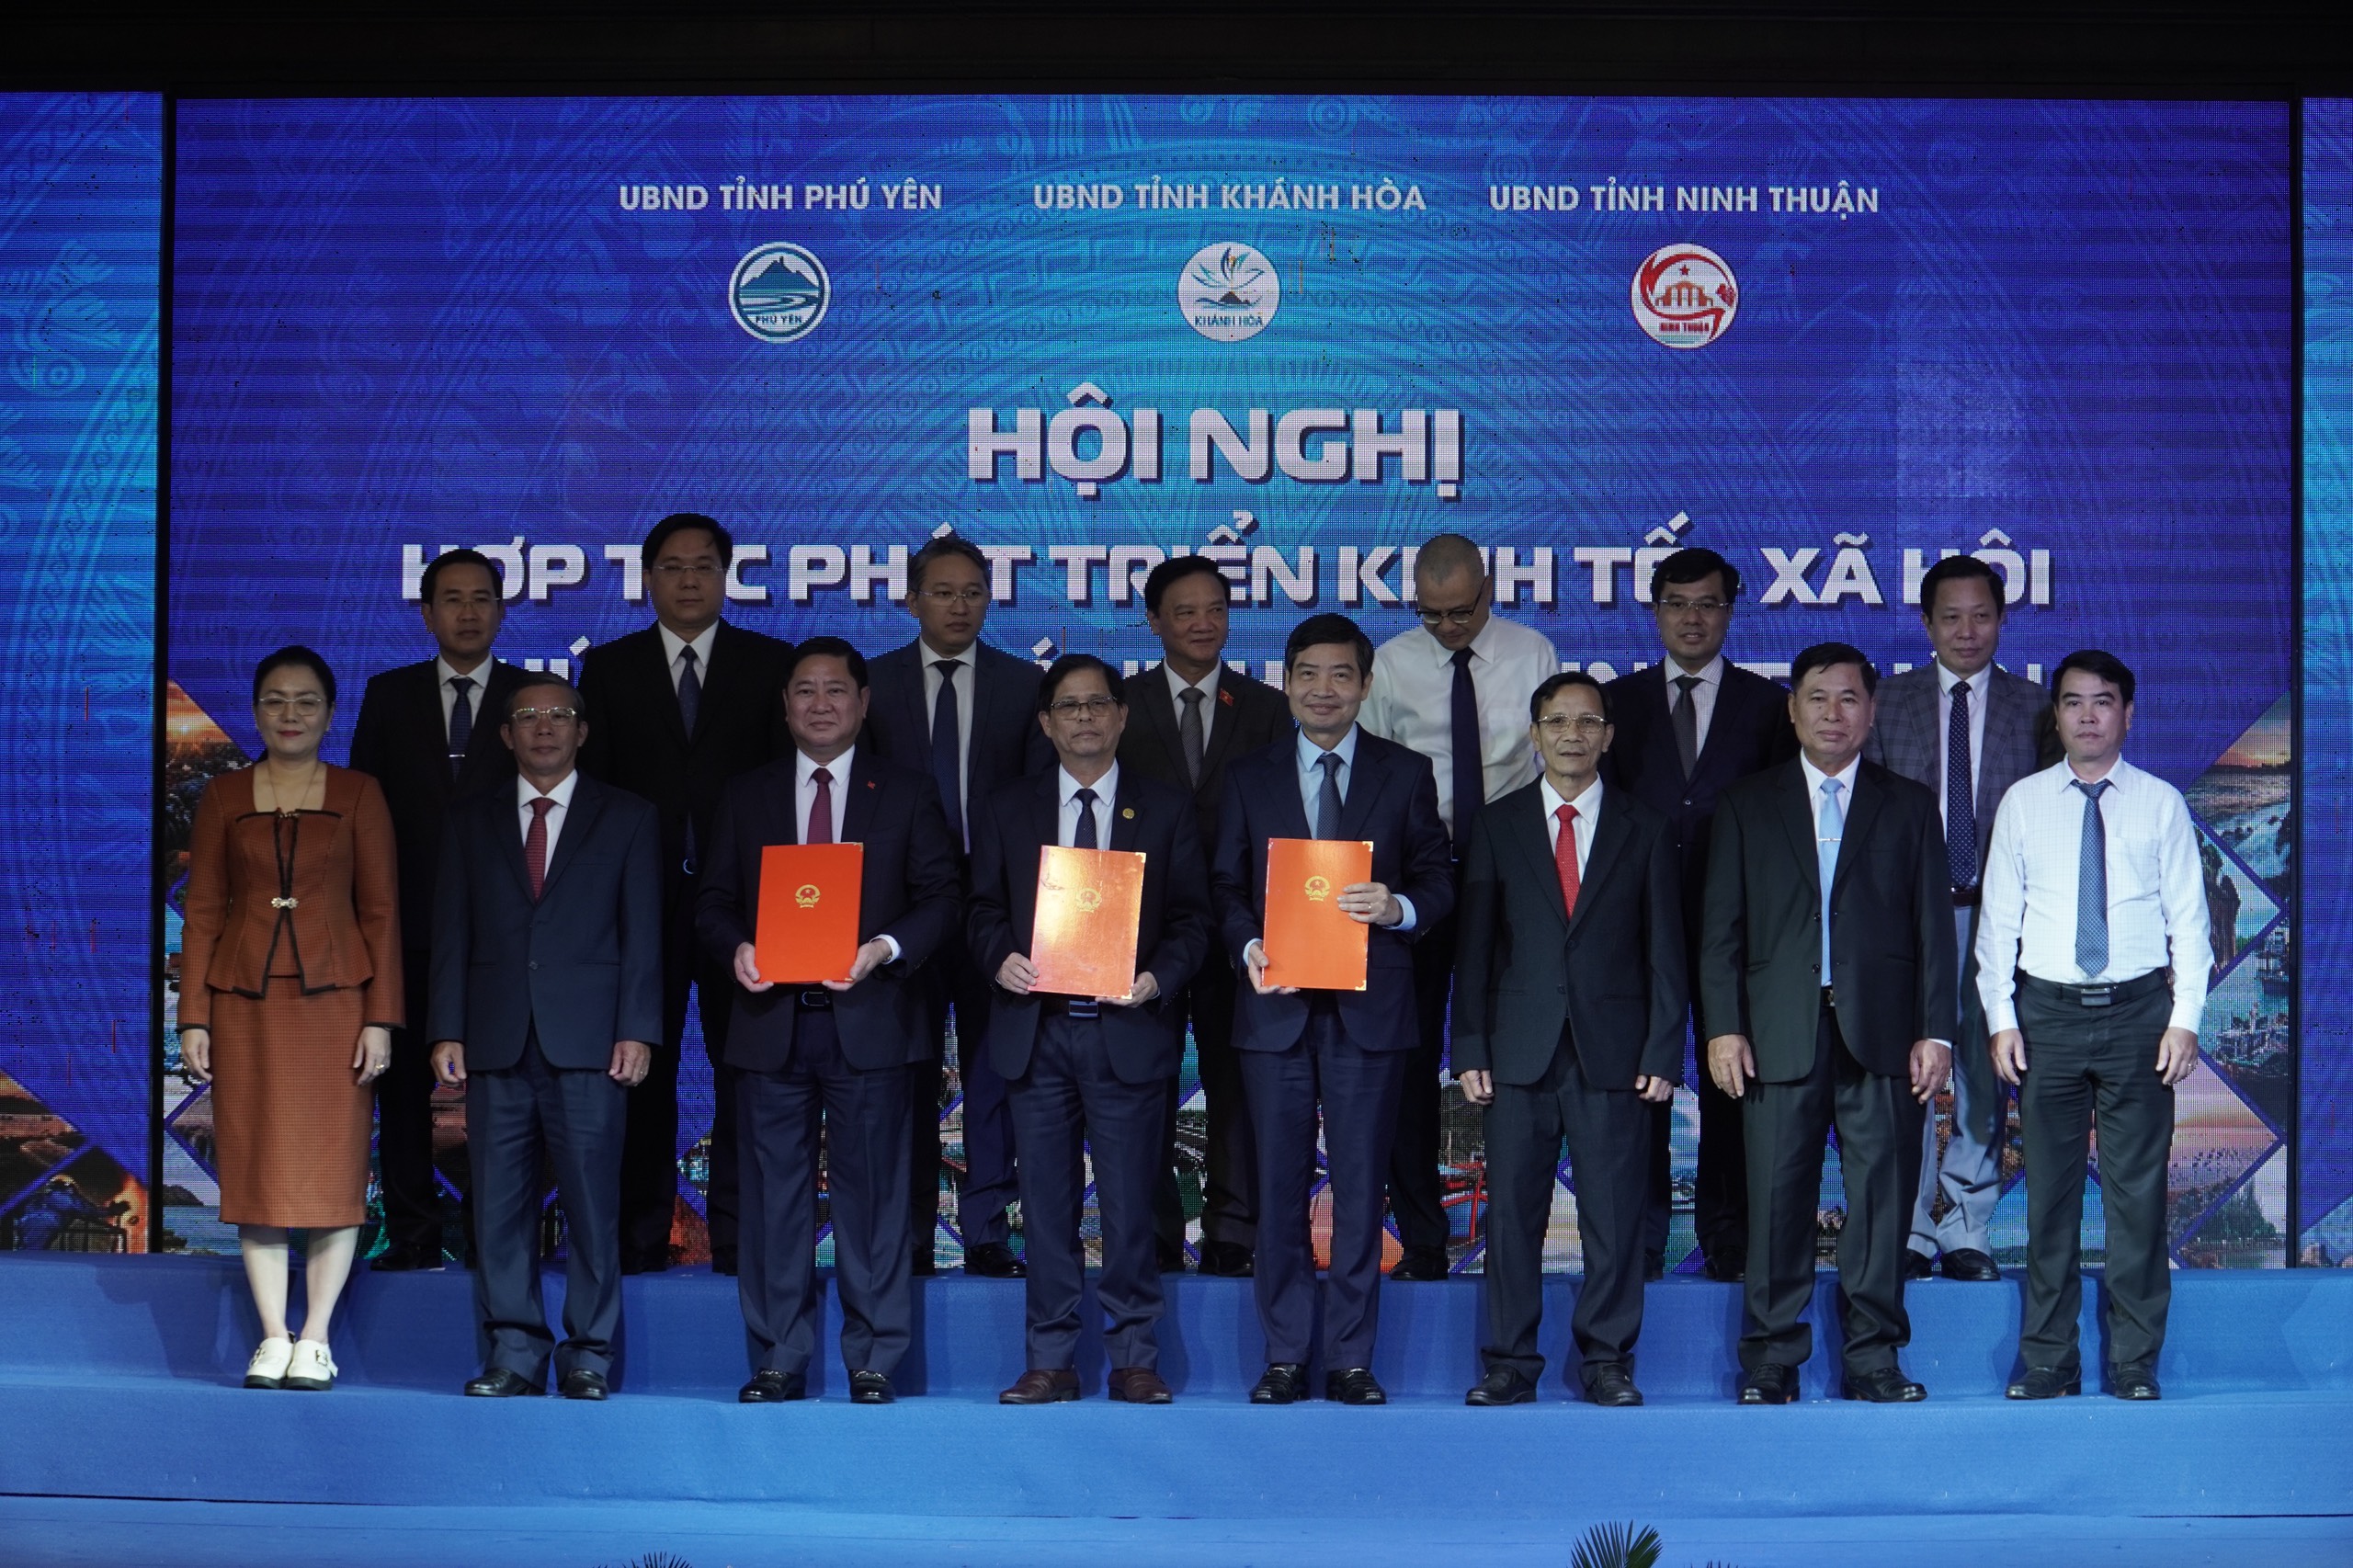 Phát huy thế mạnh cửa ngõ biển, thúc đẩy kinh tế Phú Yên - Khánh Hoà - Ninh Thuận- Ảnh 3.